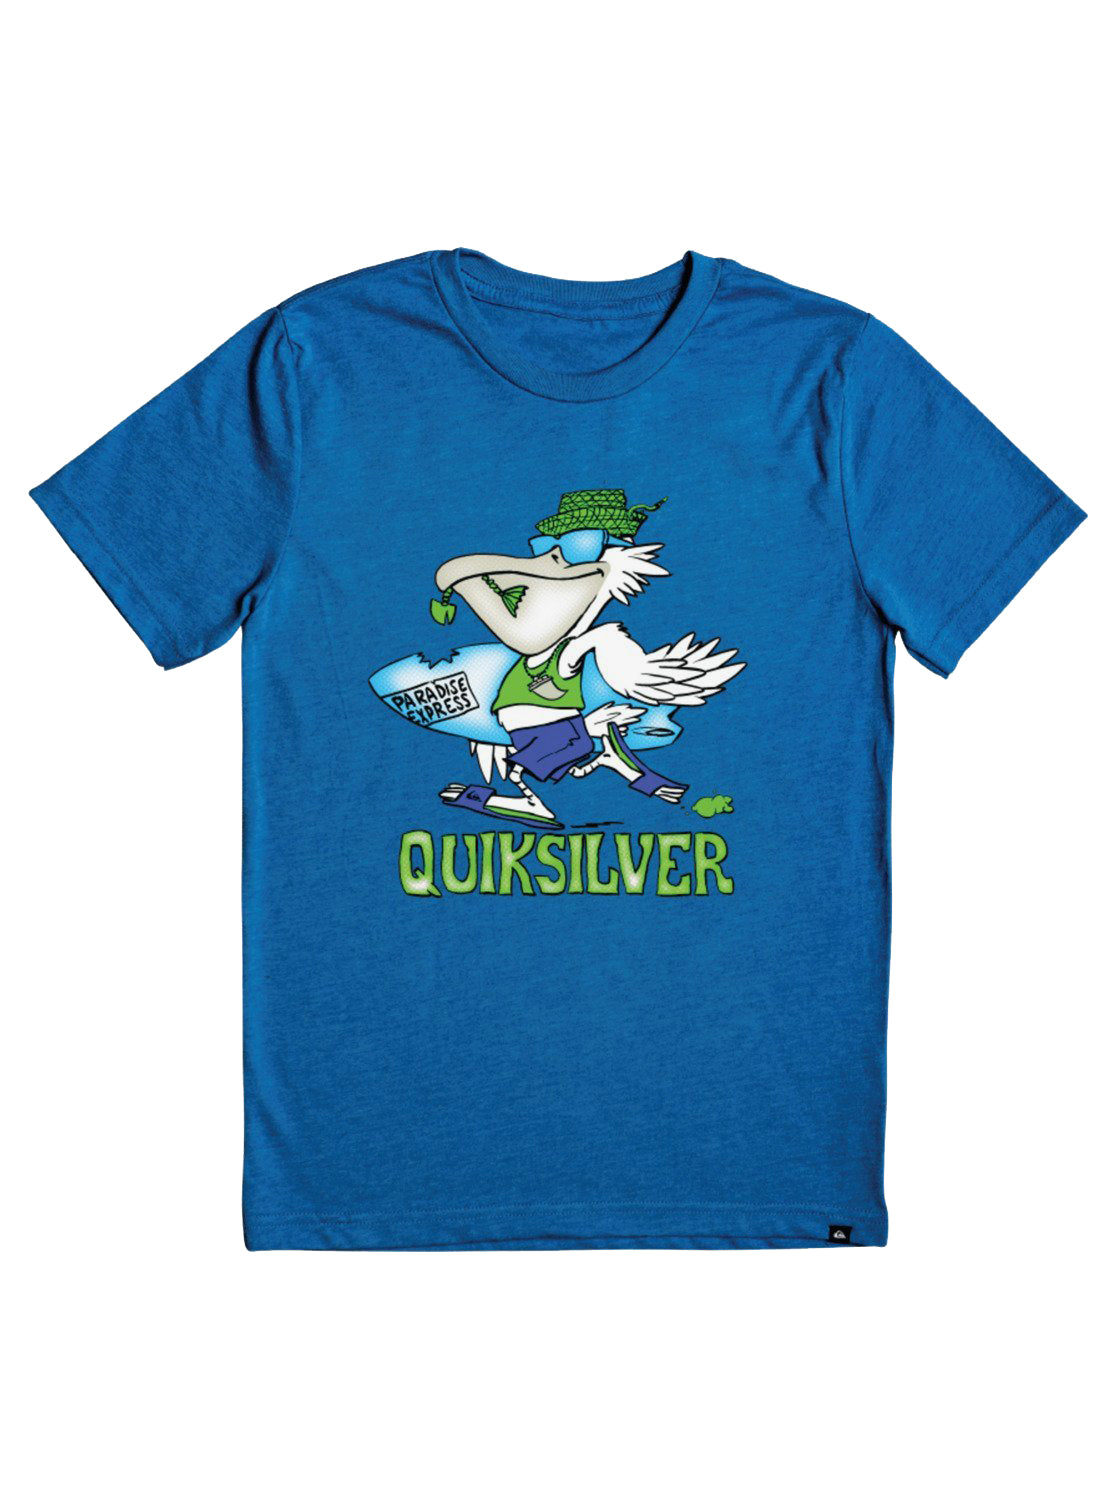 Quiksilver Kids Pelican Shred SS Tee BQVH 7